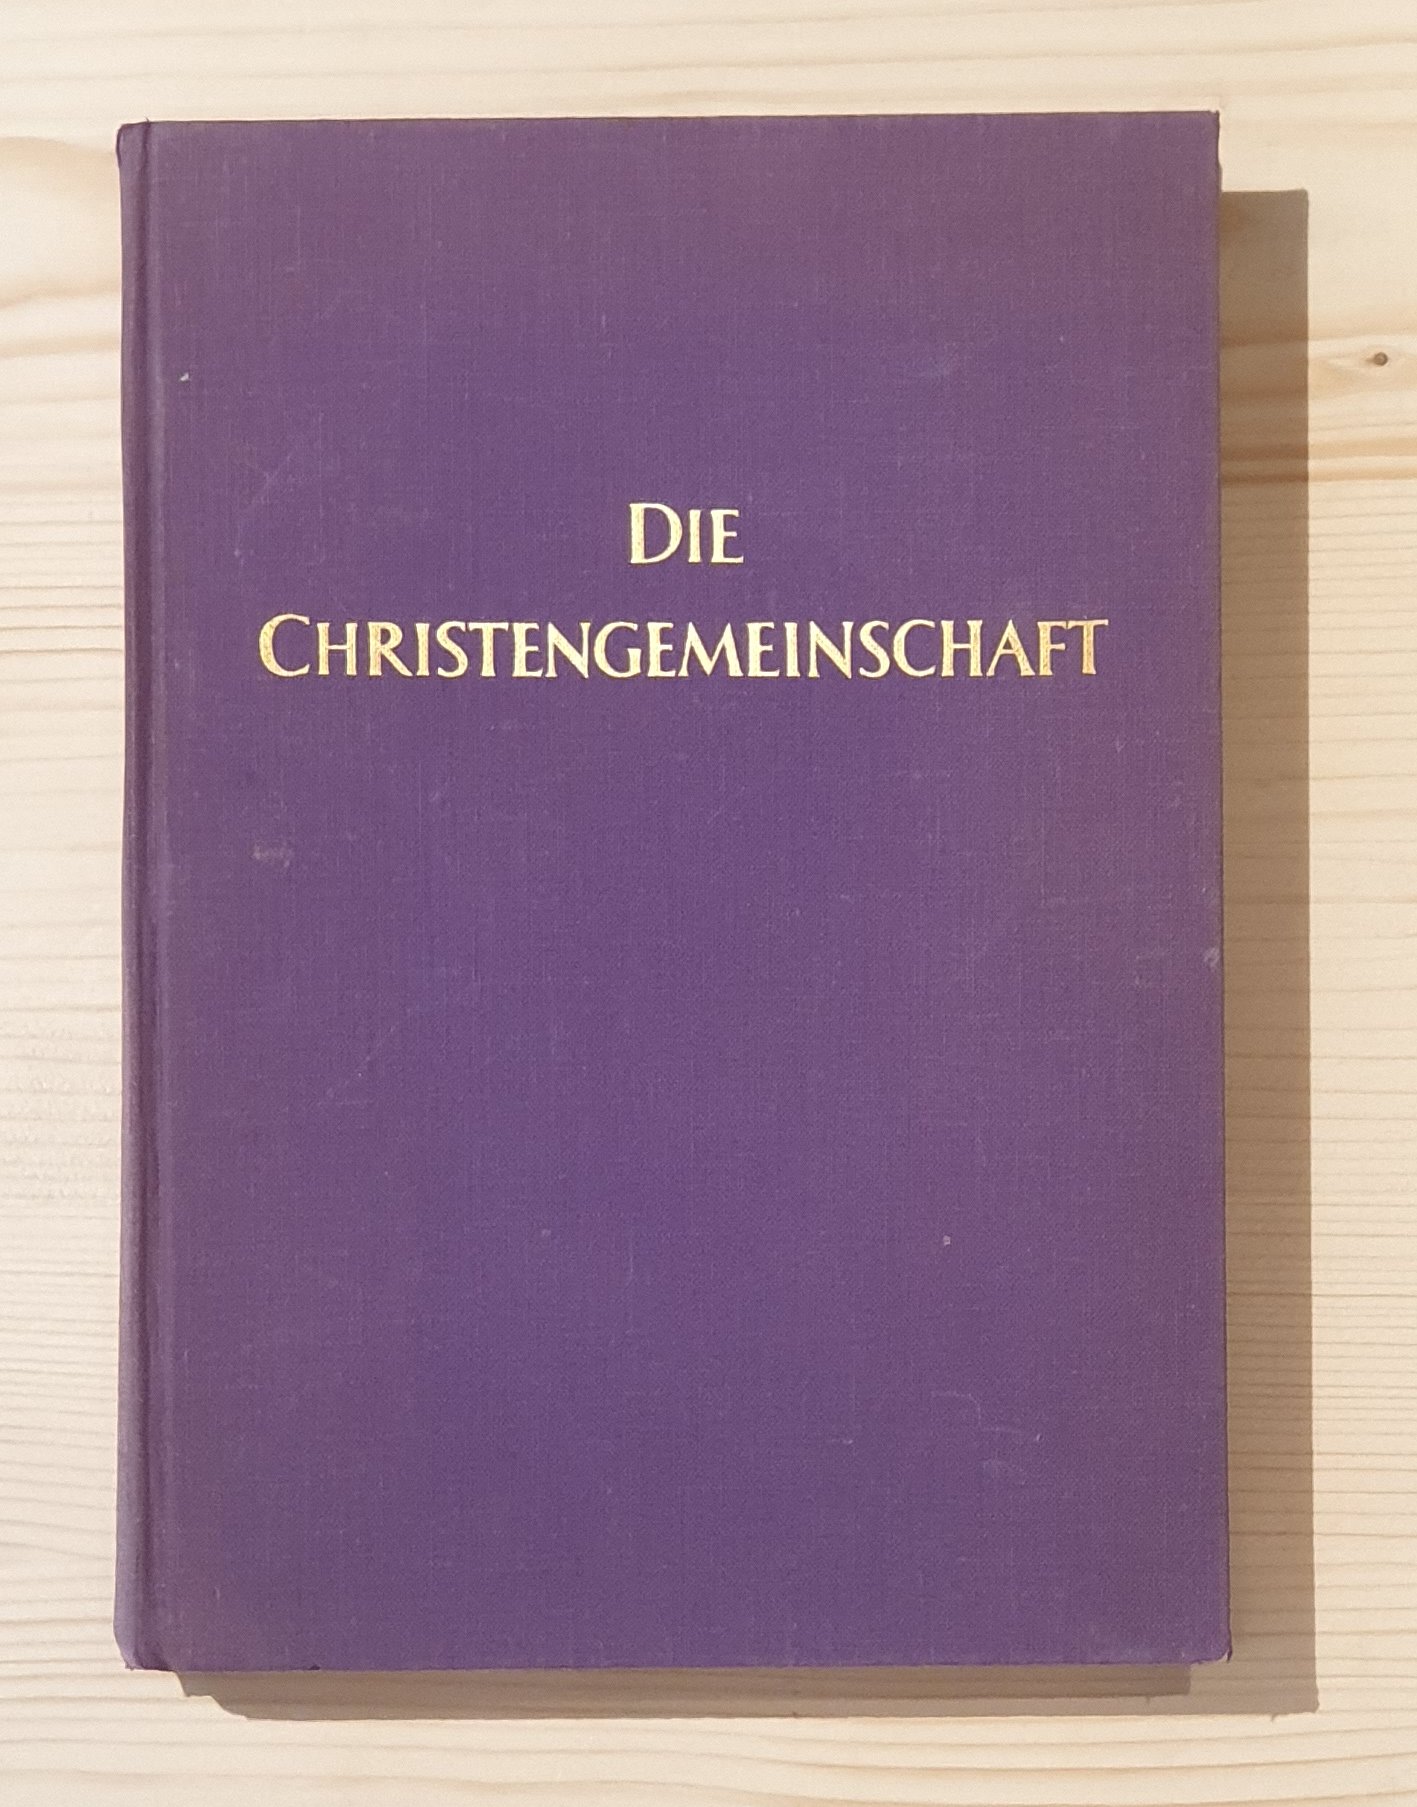 Div.:  Die Christengemeinschaft. Monatsschrift zur religiösen Erneuerung. 34. Jahrgang 1962. 